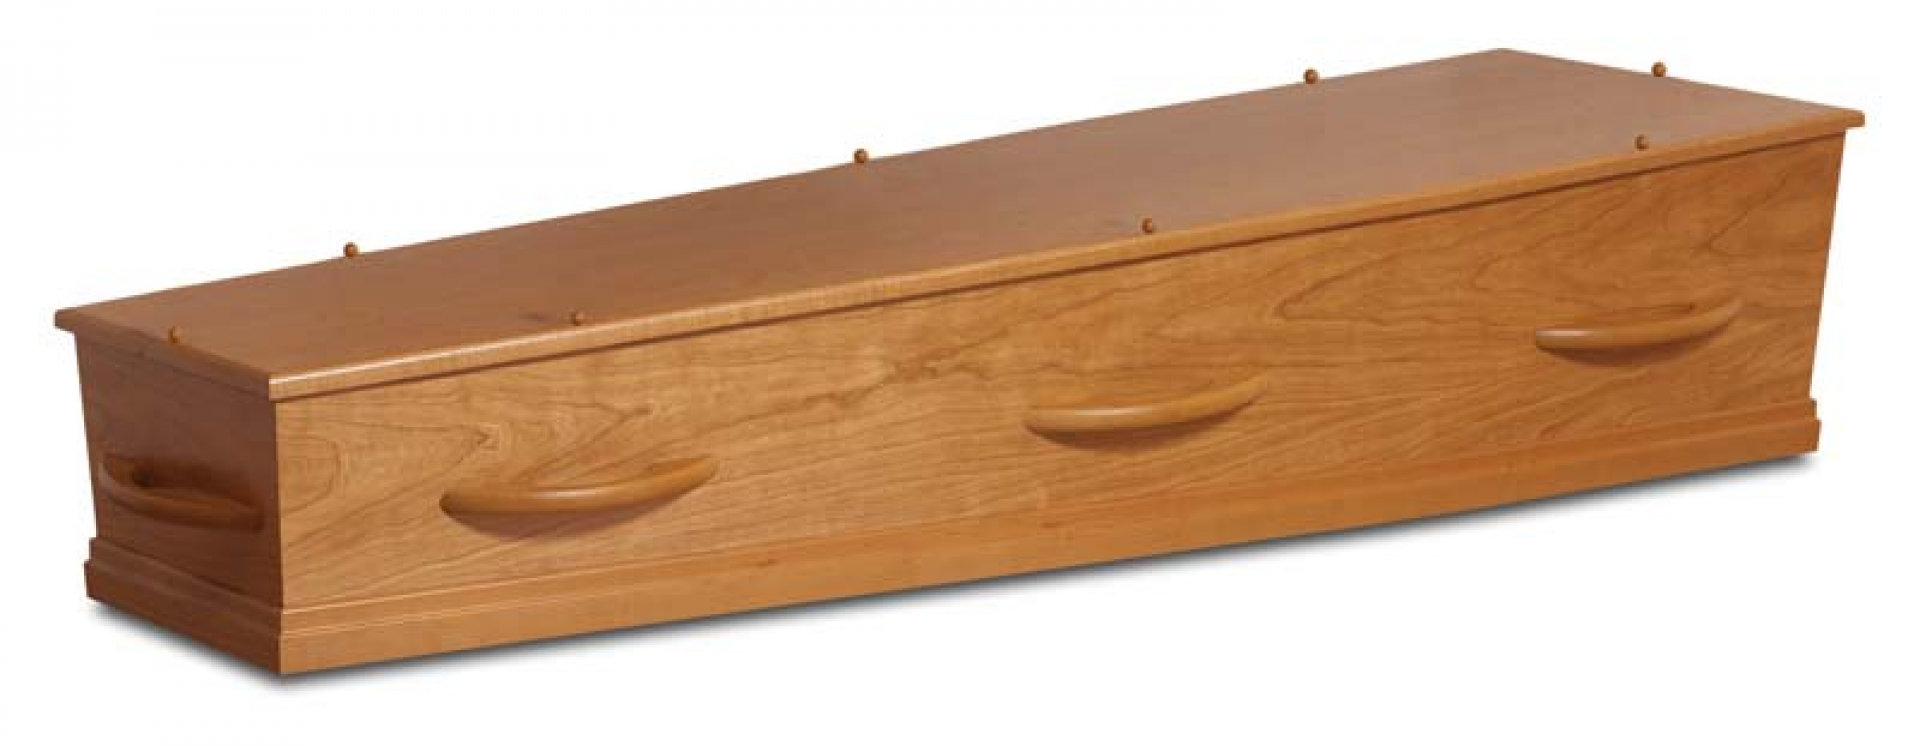 kersen fineer kist met houten grepen 1-40HC8